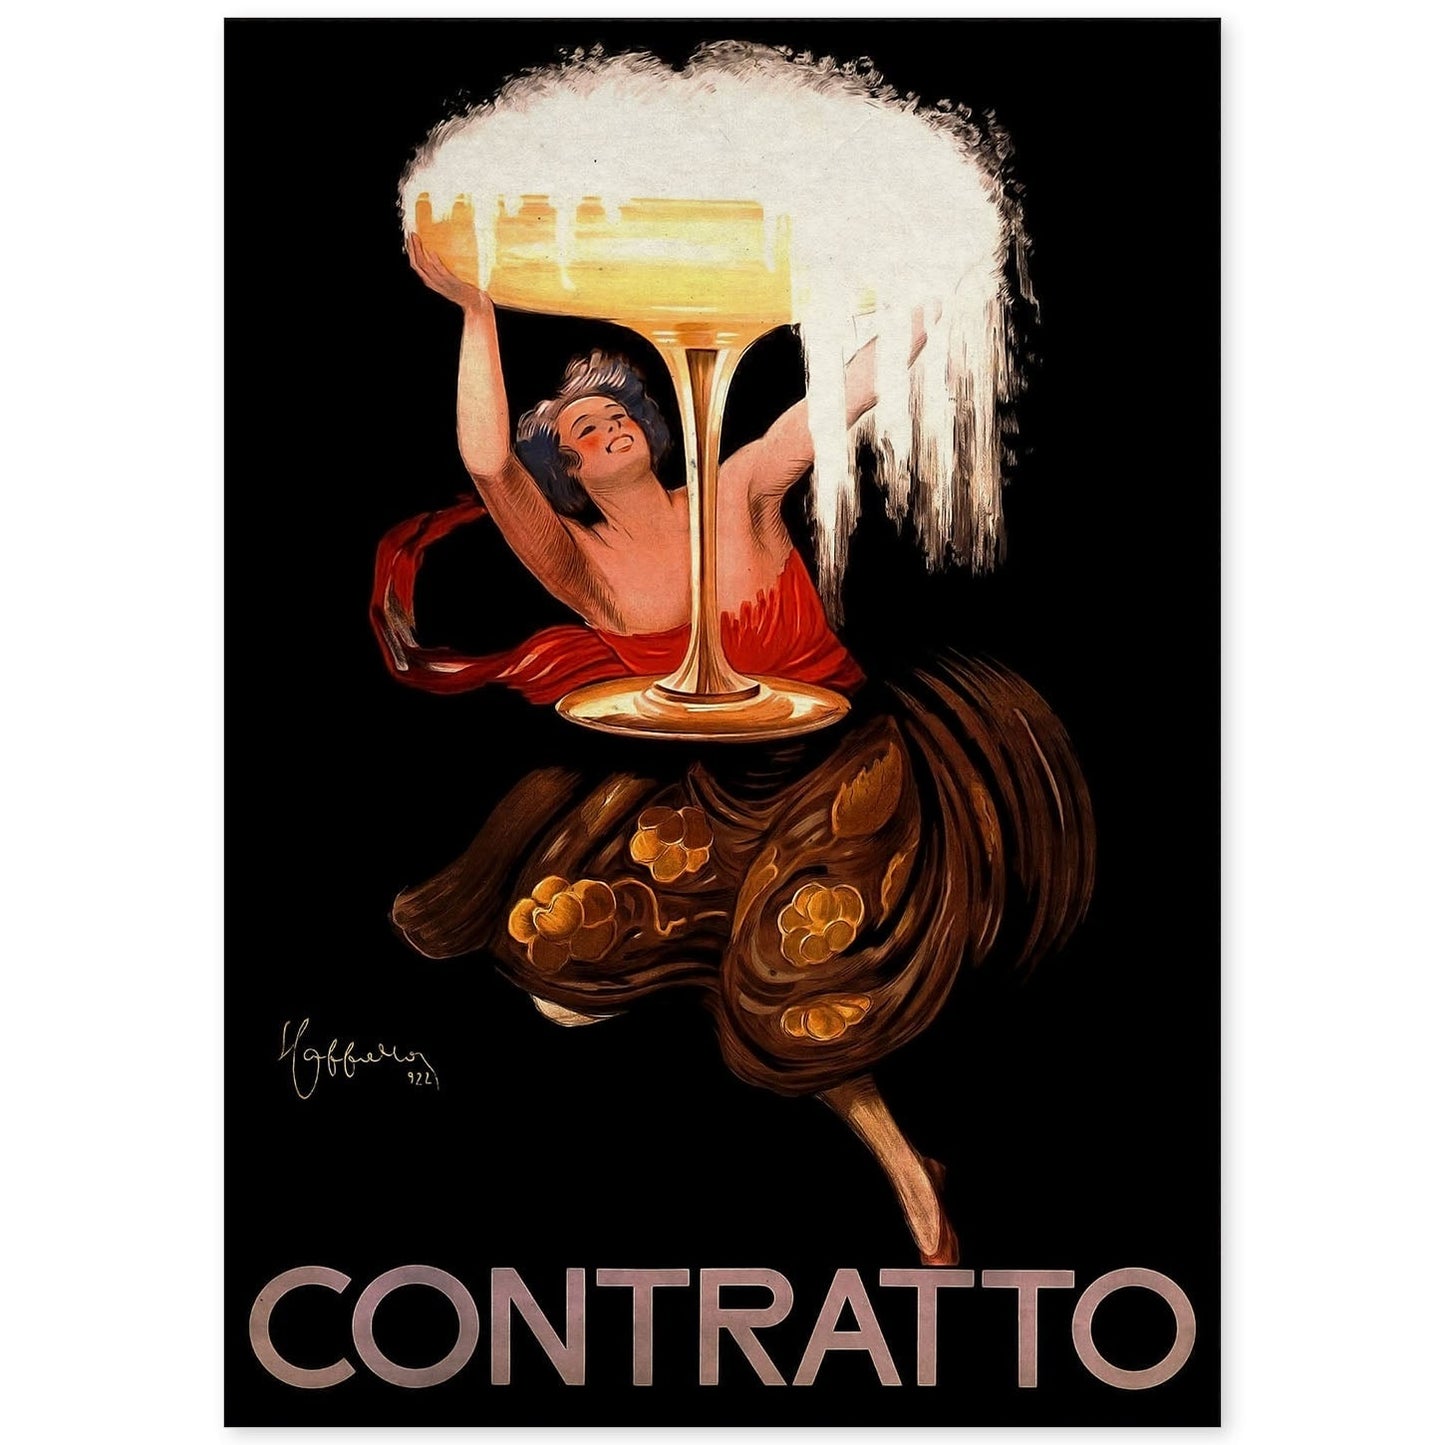 Poster vintage de Contratto. con imágenes vintage y de publicidad antigua.-Artwork-Nacnic-A4-Sin marco-Nacnic Estudio SL